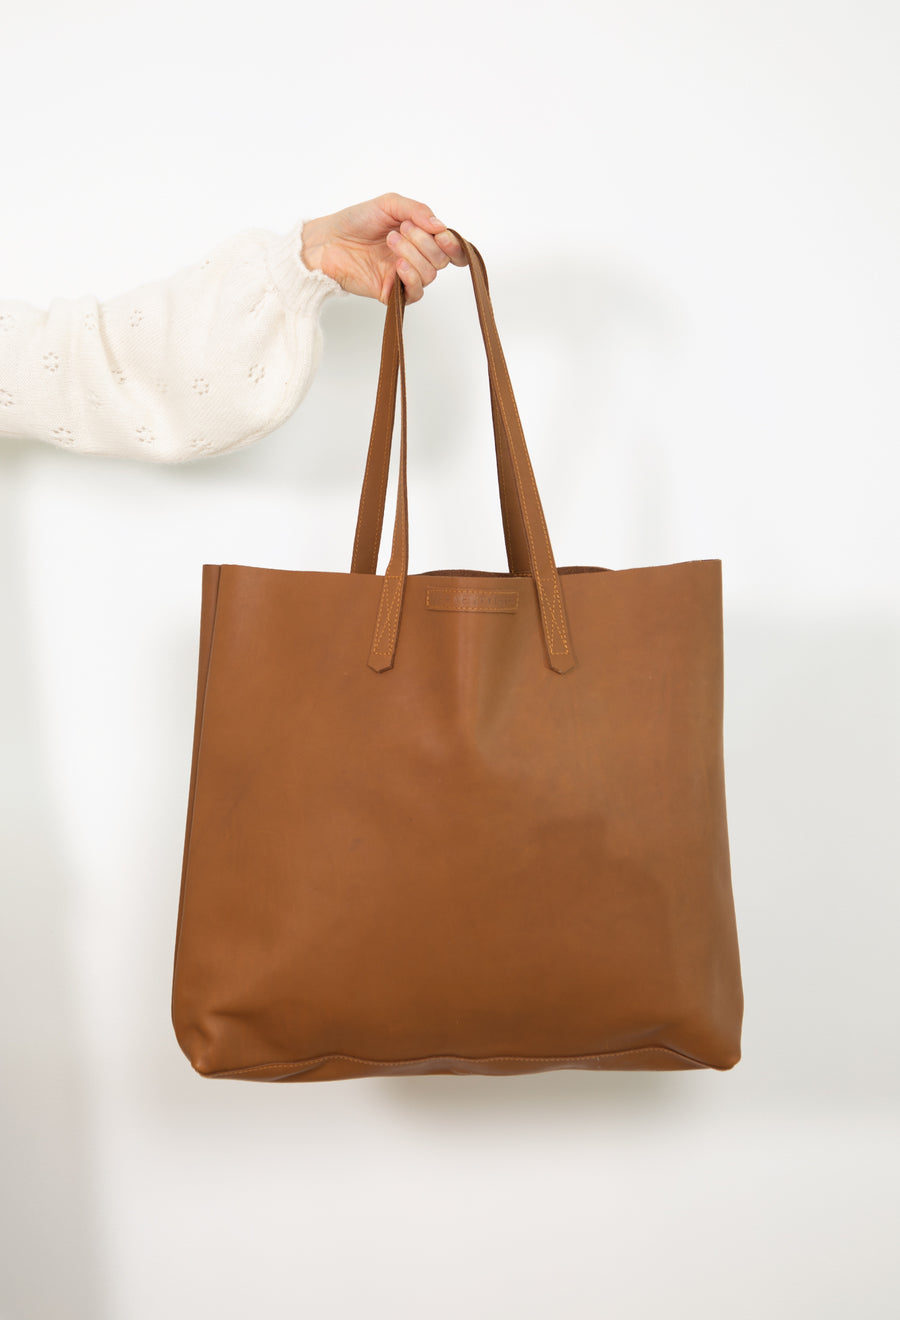 Amelia Boland  #23 Large Leather Tote Bag - Tan